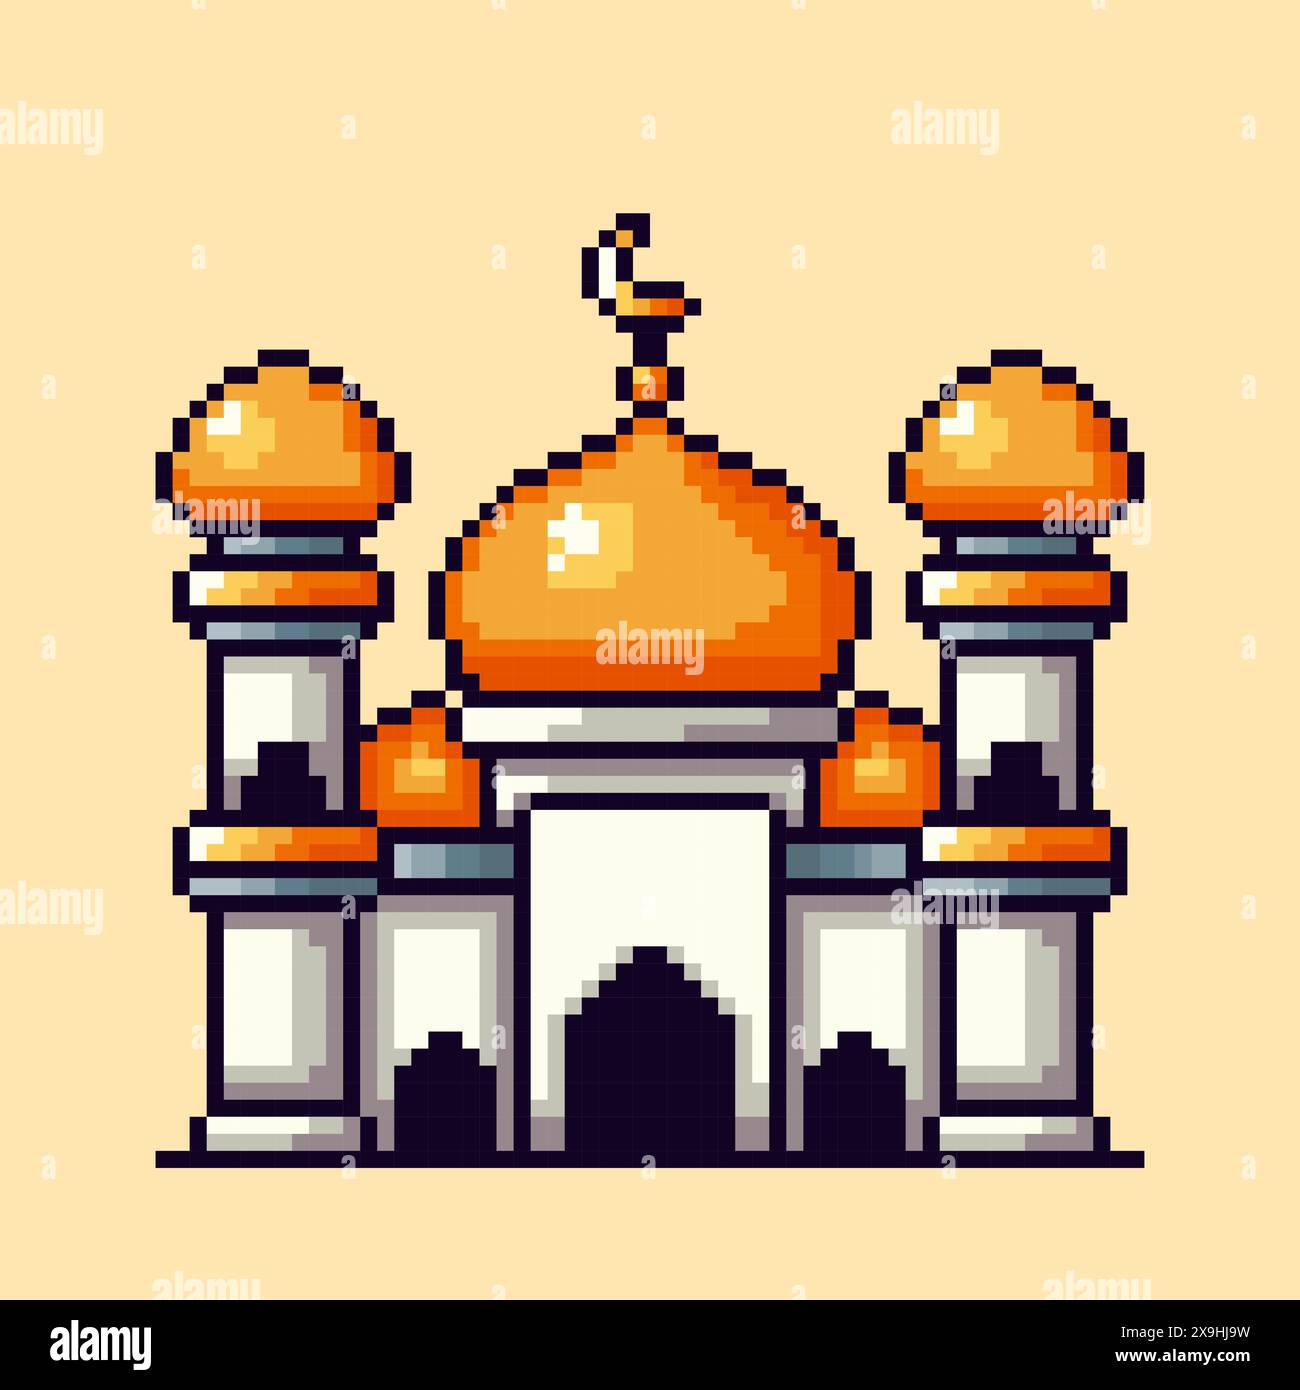 Vektor-Illustration des Moschee-Designs mit Pixel Art Design, perfekt für Spielelemente thematische Designs Stock Vektor